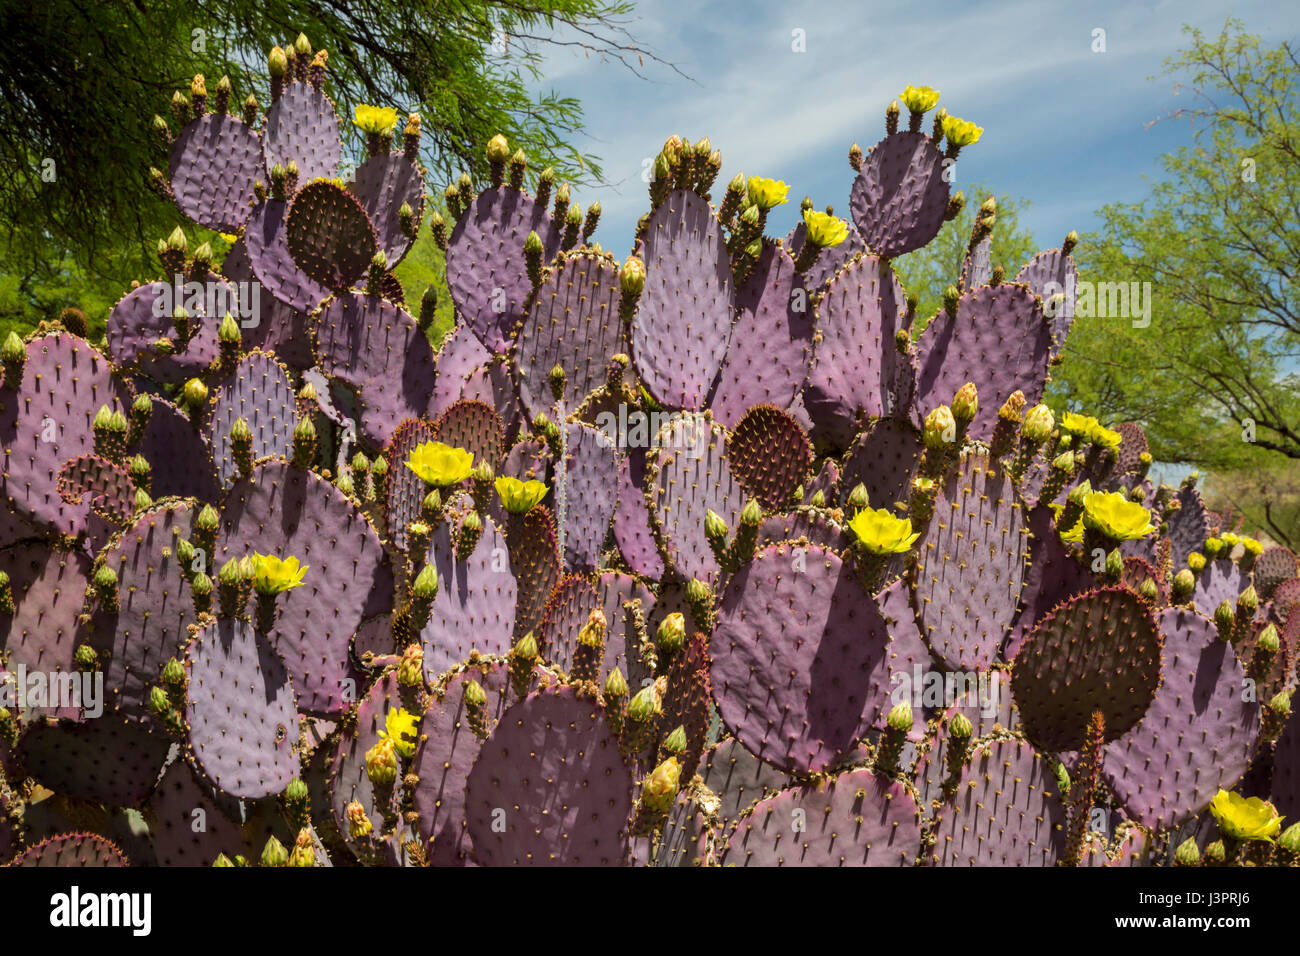 Amado, Arizona - Purple prickly pear cactus. Stock Photo